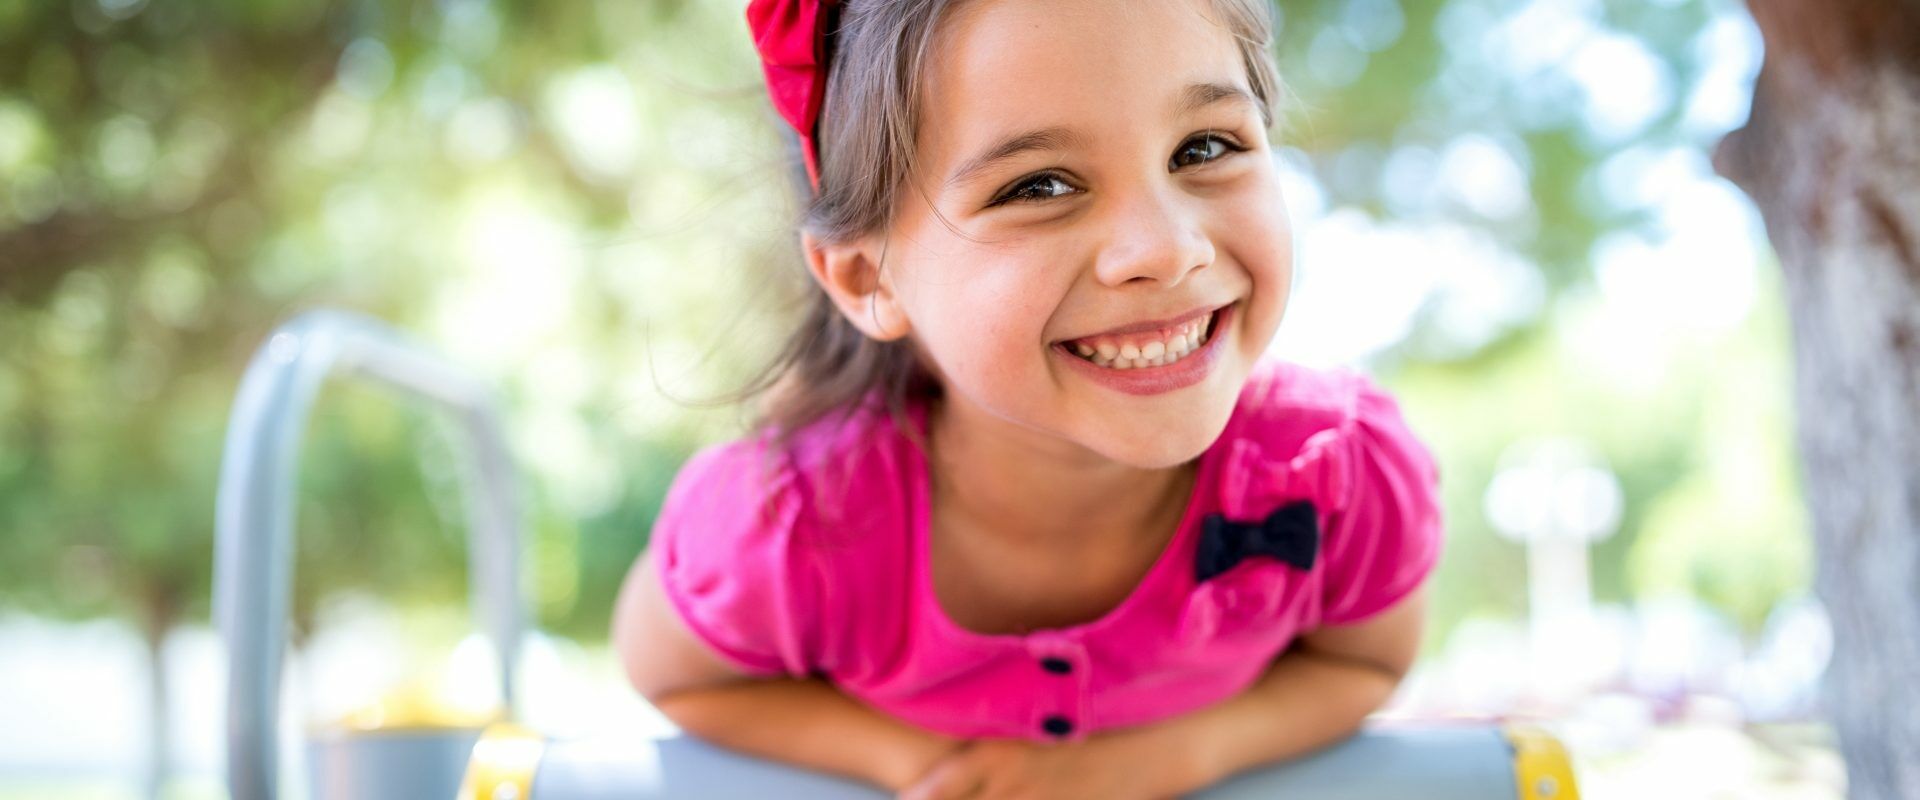 Dr Katarzyna Simonienko o swobodnej zabawie dzieci na świeżym powietrzu. Mała dziewczynka w różowej bluzce bawi się na placu zabaw na dworze latem.